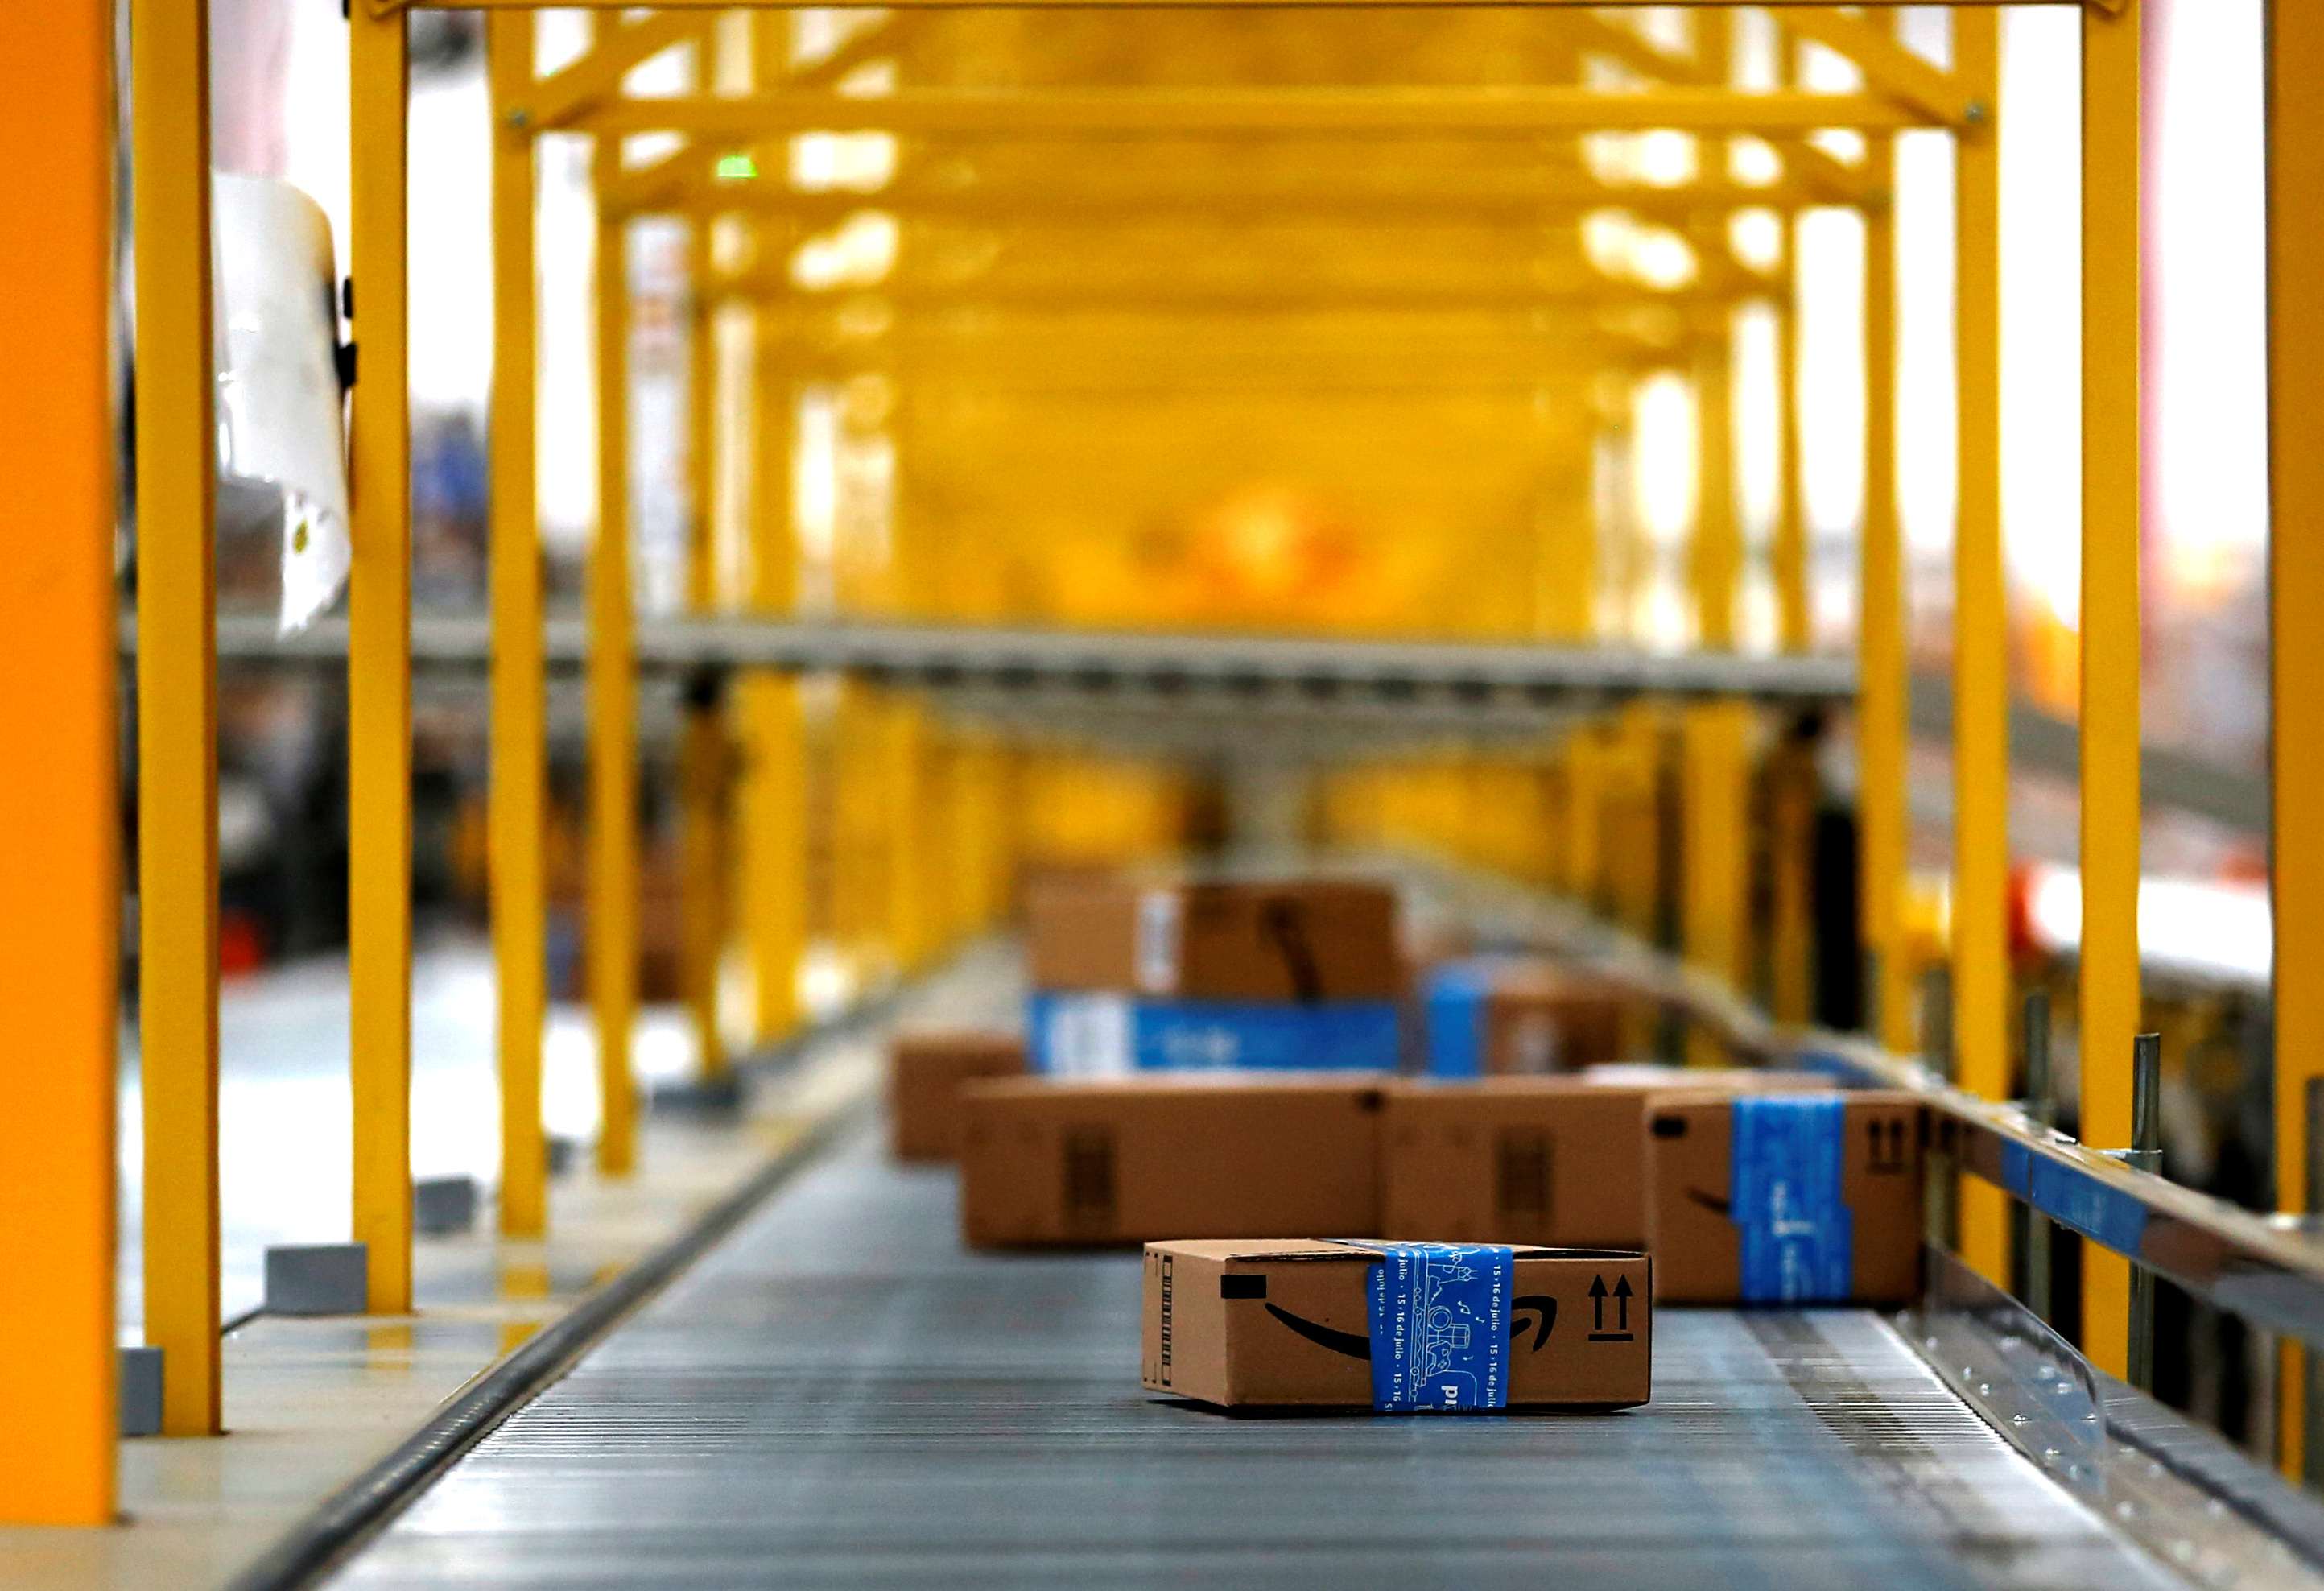 Halte à l'obsolescence programmée dépose plainte contre Amazon